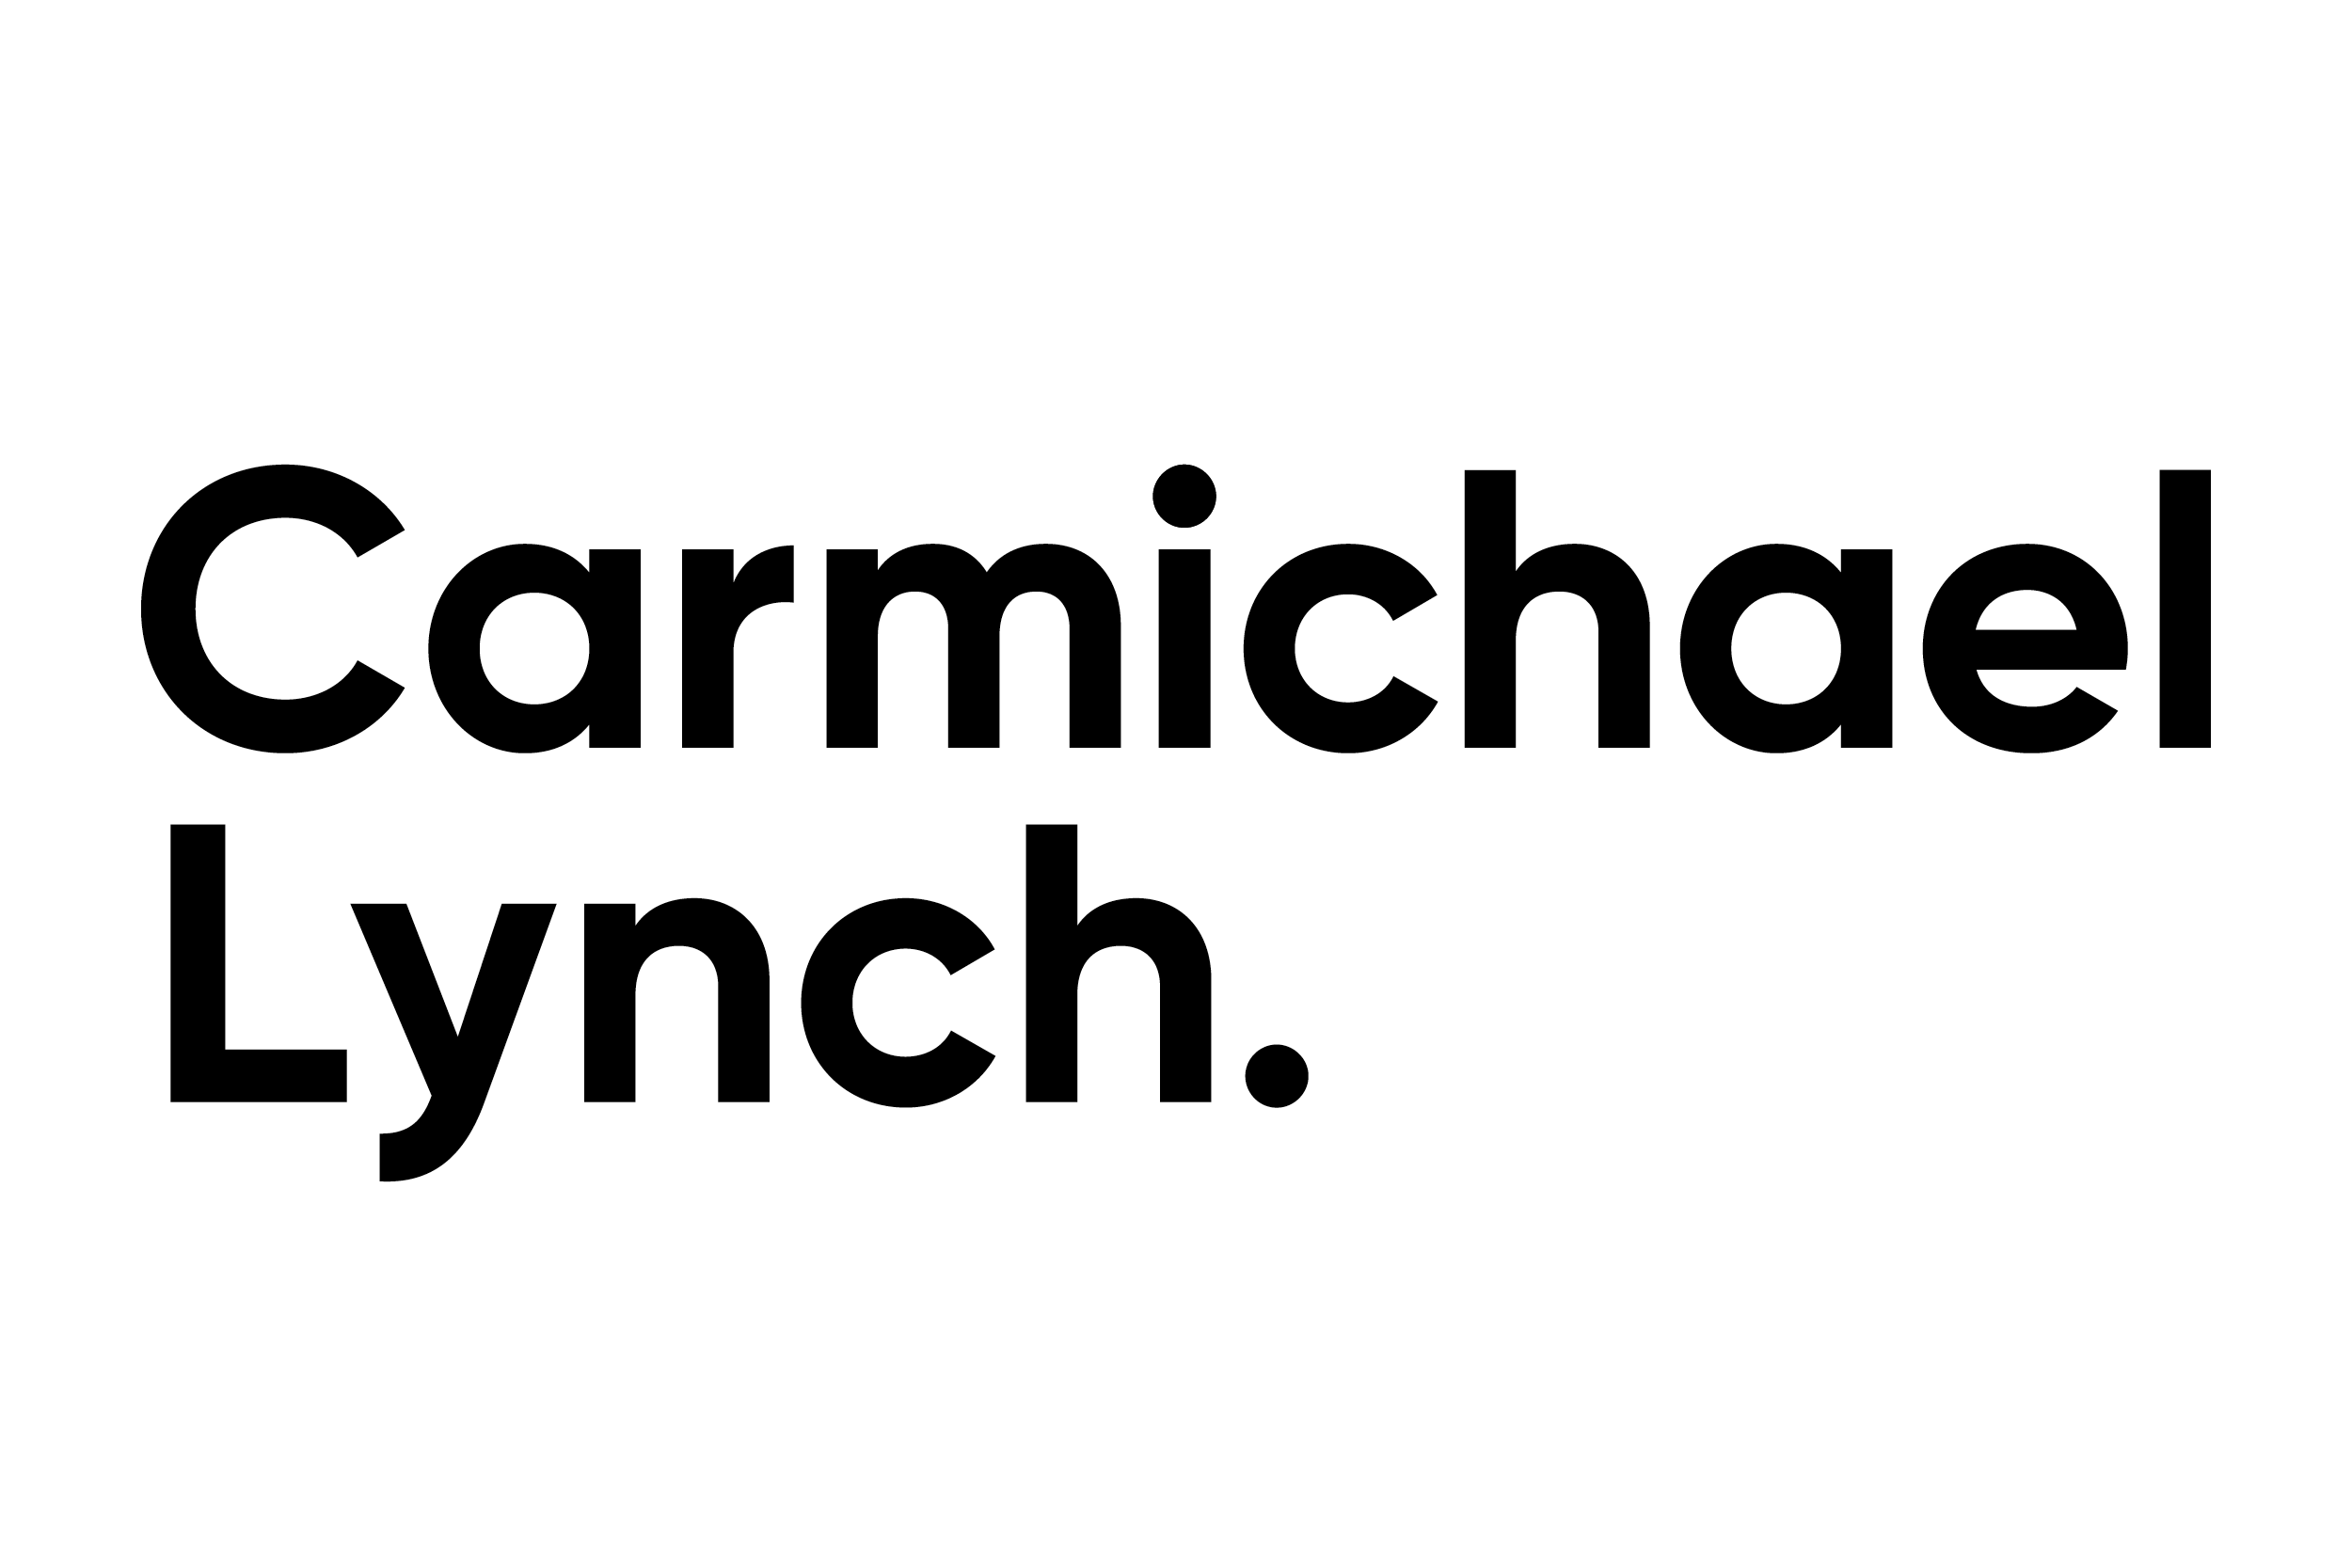 Carmichael Lynch